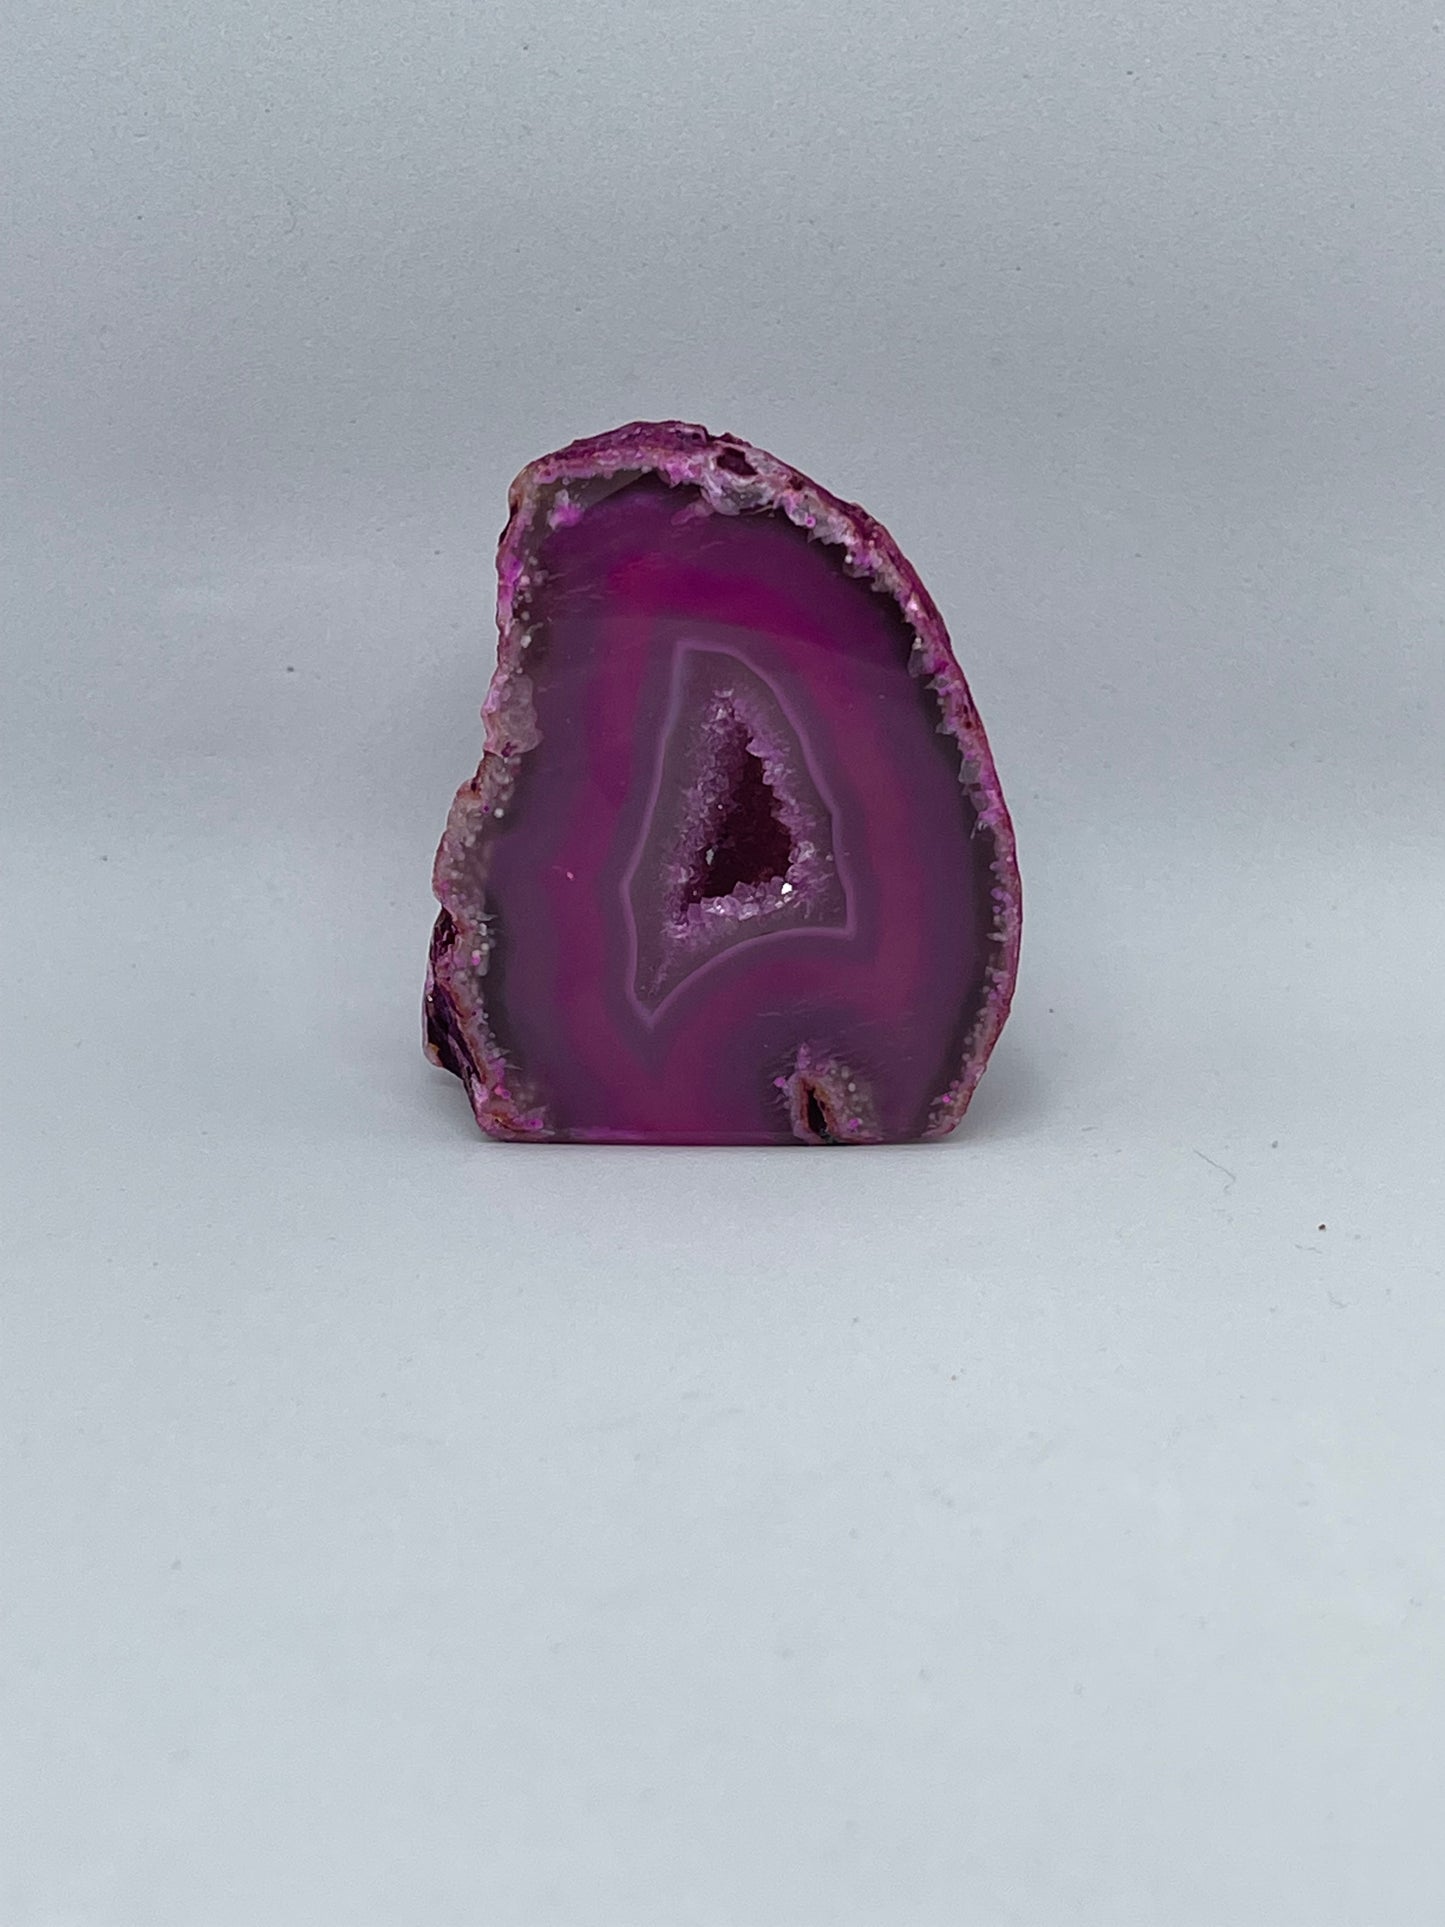 Crystal Agate Pink Halves Medium  Base 6+cm Polished